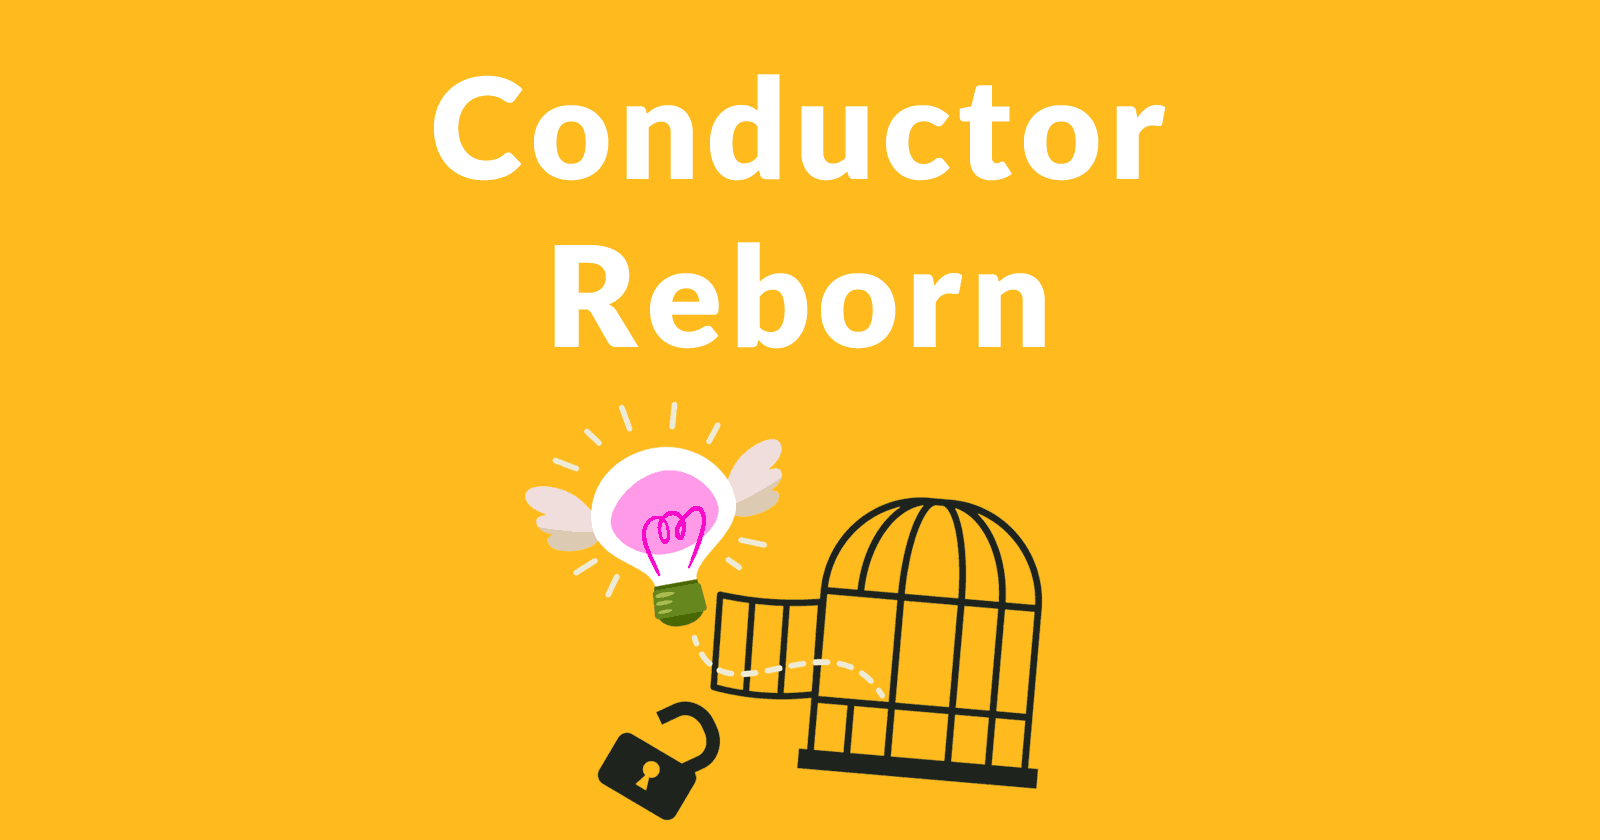 Conductor SEO Company Reborn